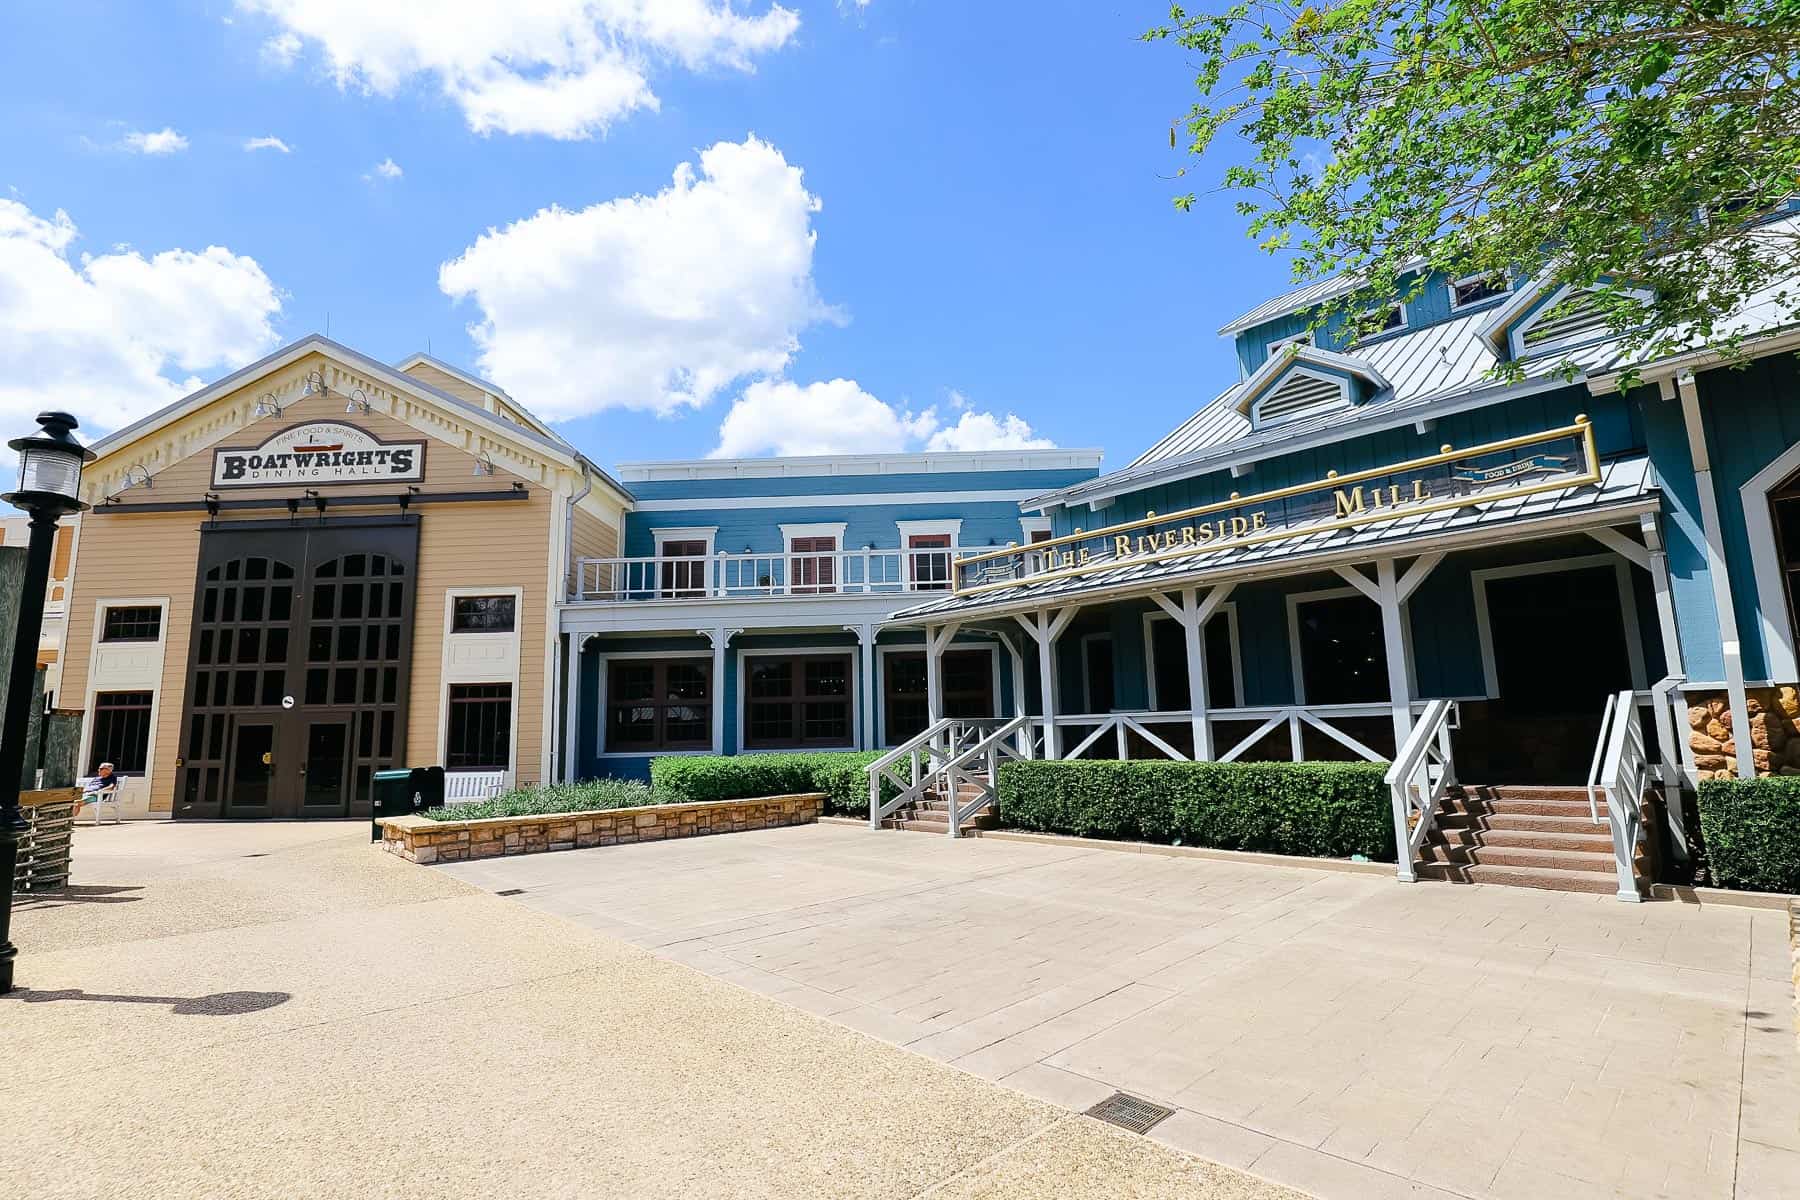 Disney’s Port Orleans Riverside Restaurant Guide (All 4 Options)